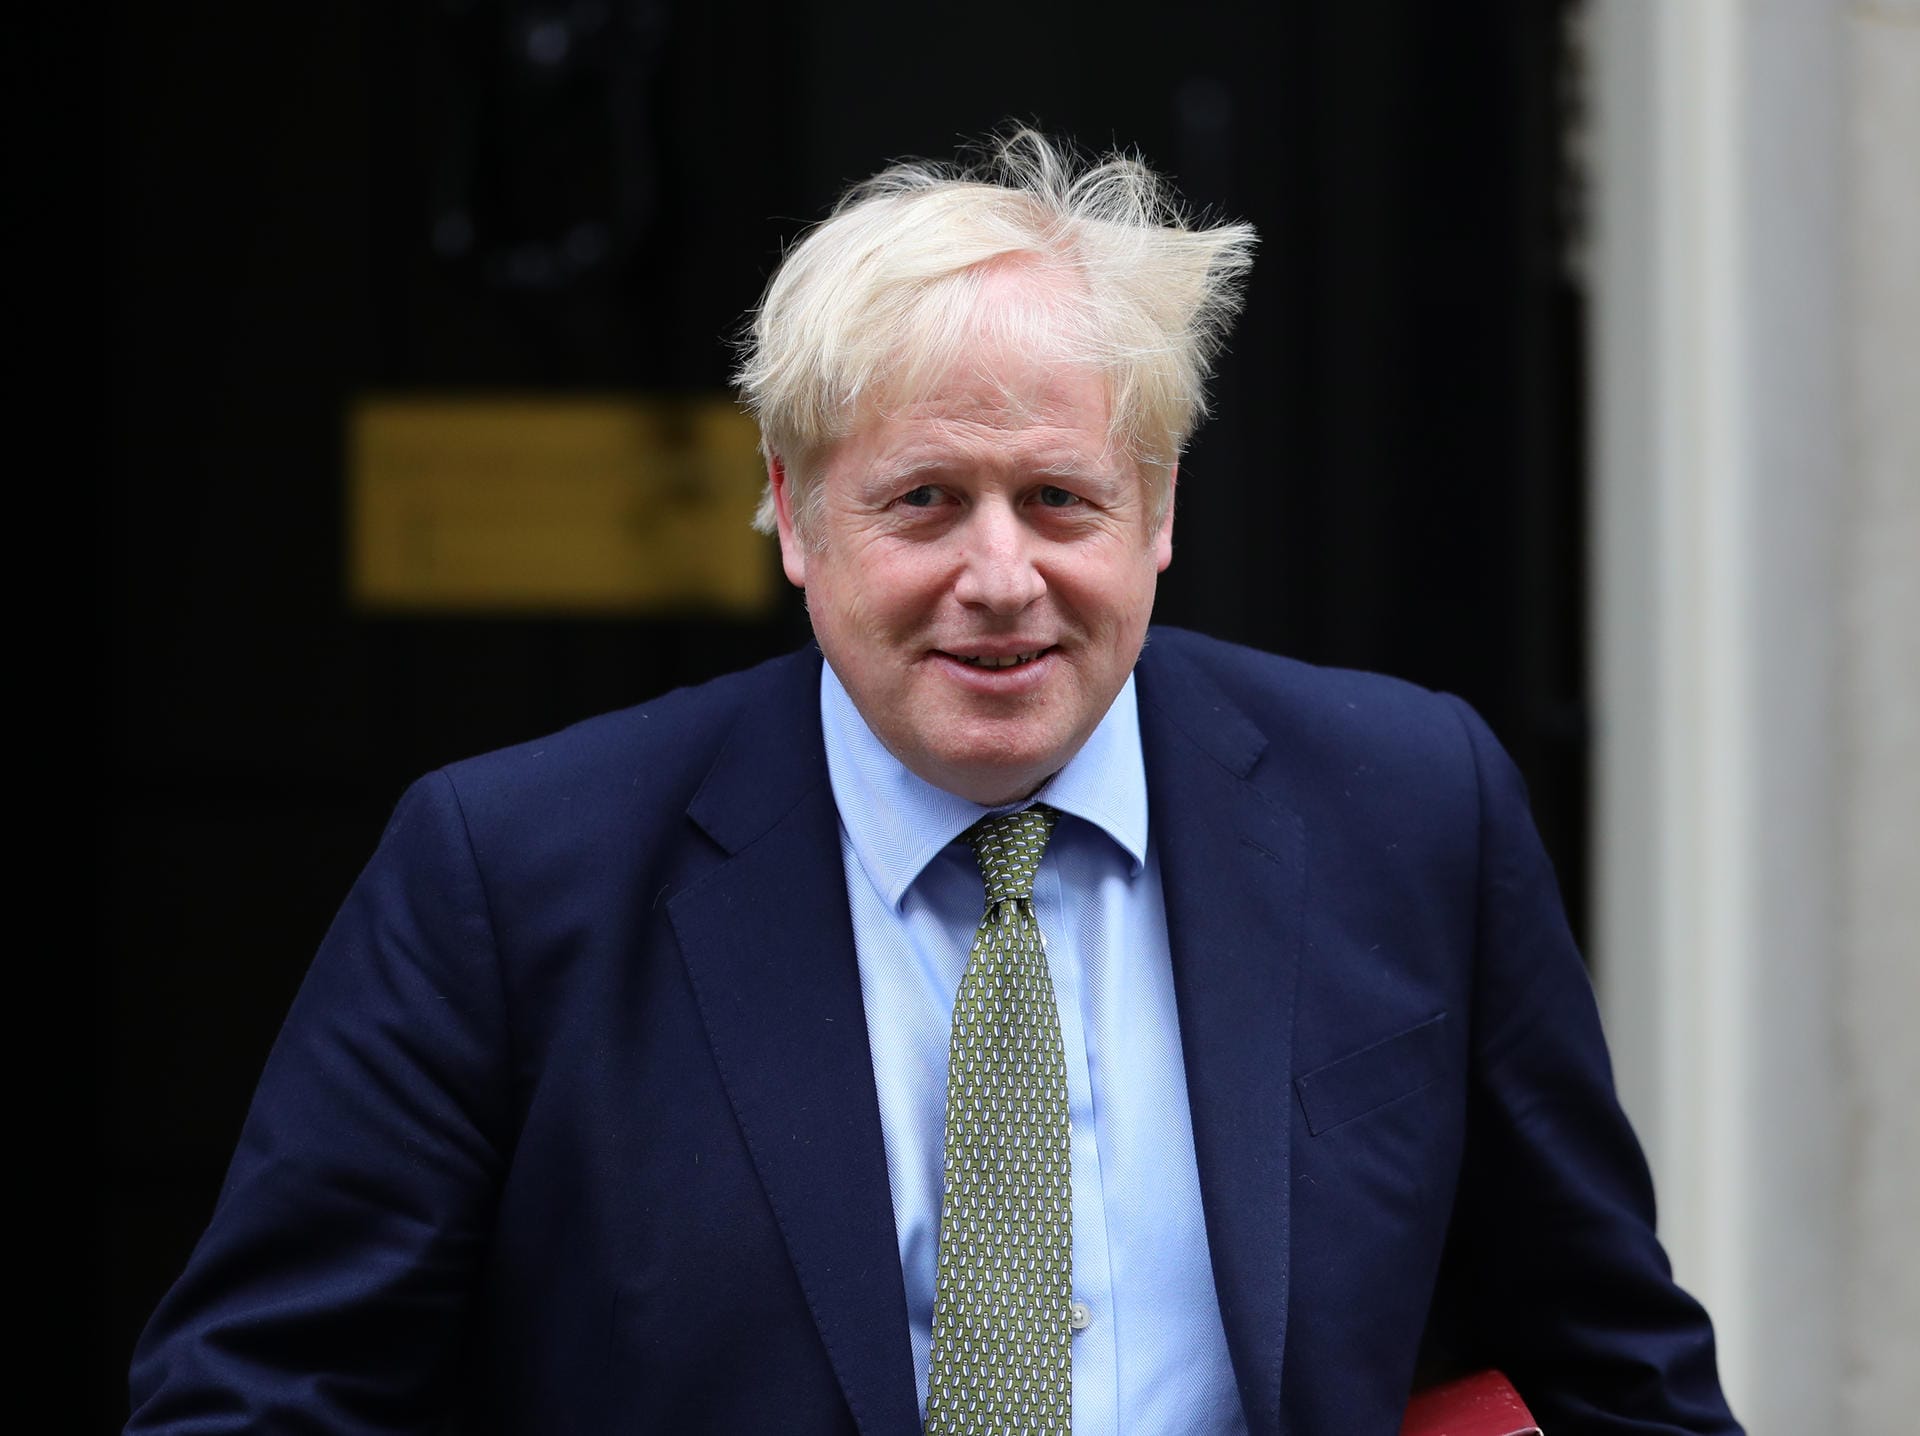 Der britische Premierminister Boris Johnson verurteilt Irans Raketenangriffe. "Der Iran sollte diese rücksichtslosen und gefährlichen Angriffe nicht wiederholen, sondern stattdessen dringend eine Deeskalation verfolgen", sagt er im Parlament in London.